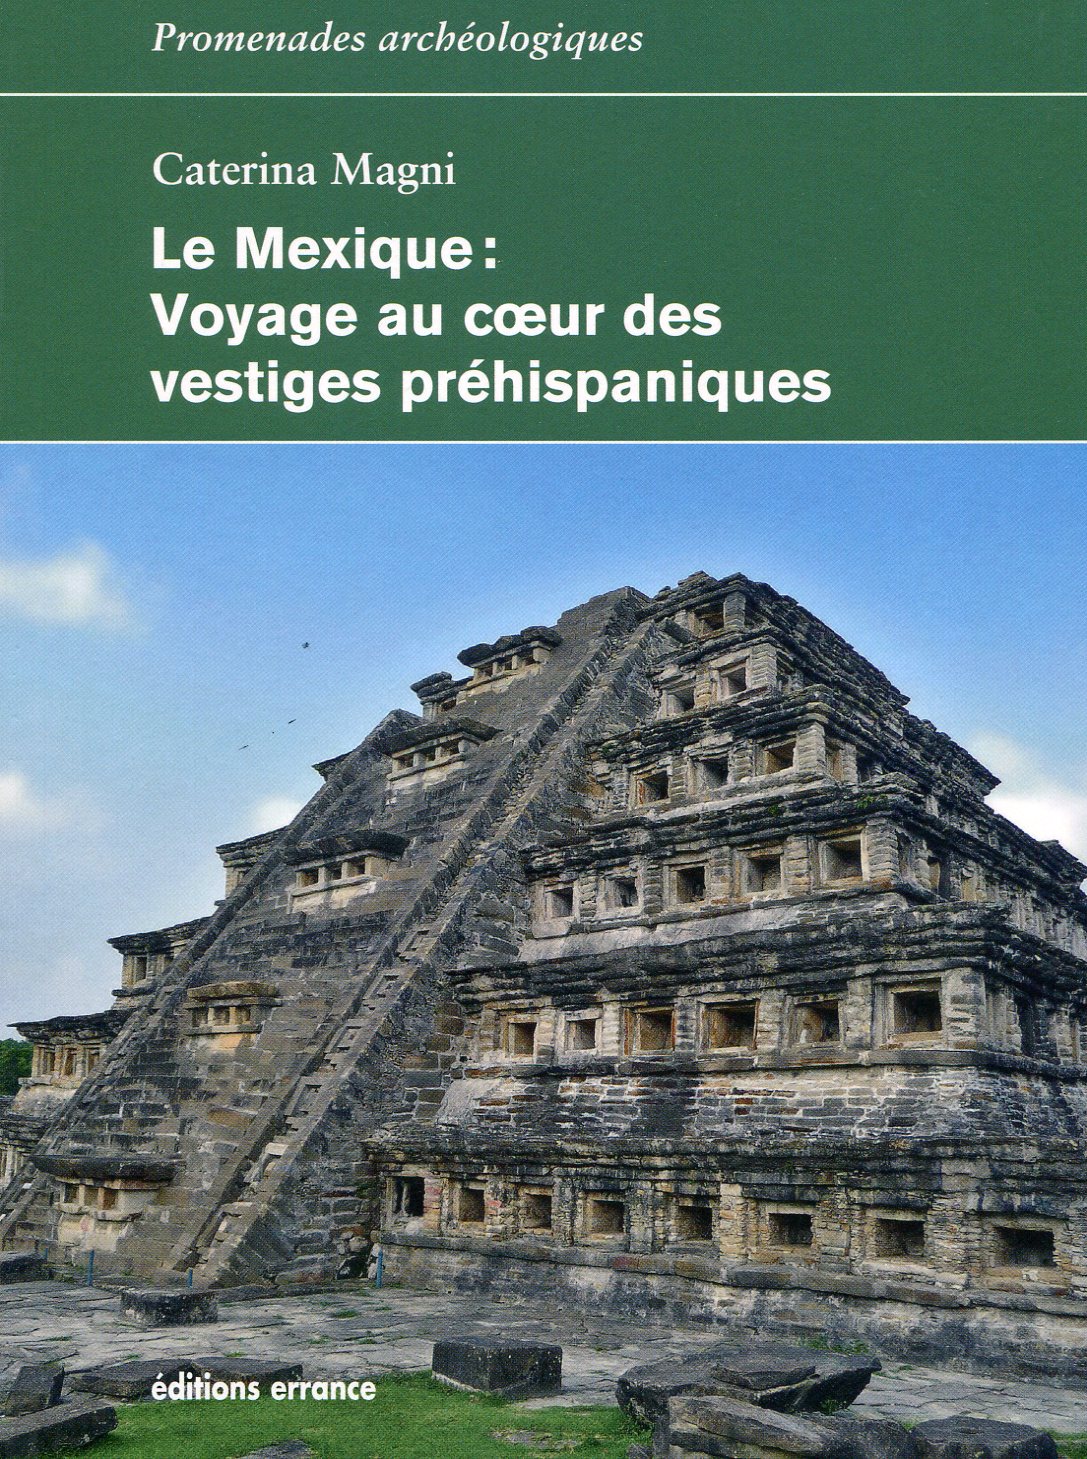 Le Mexique : Voyage au coeur des vestiges préhispaniques, 2016, 230 p.